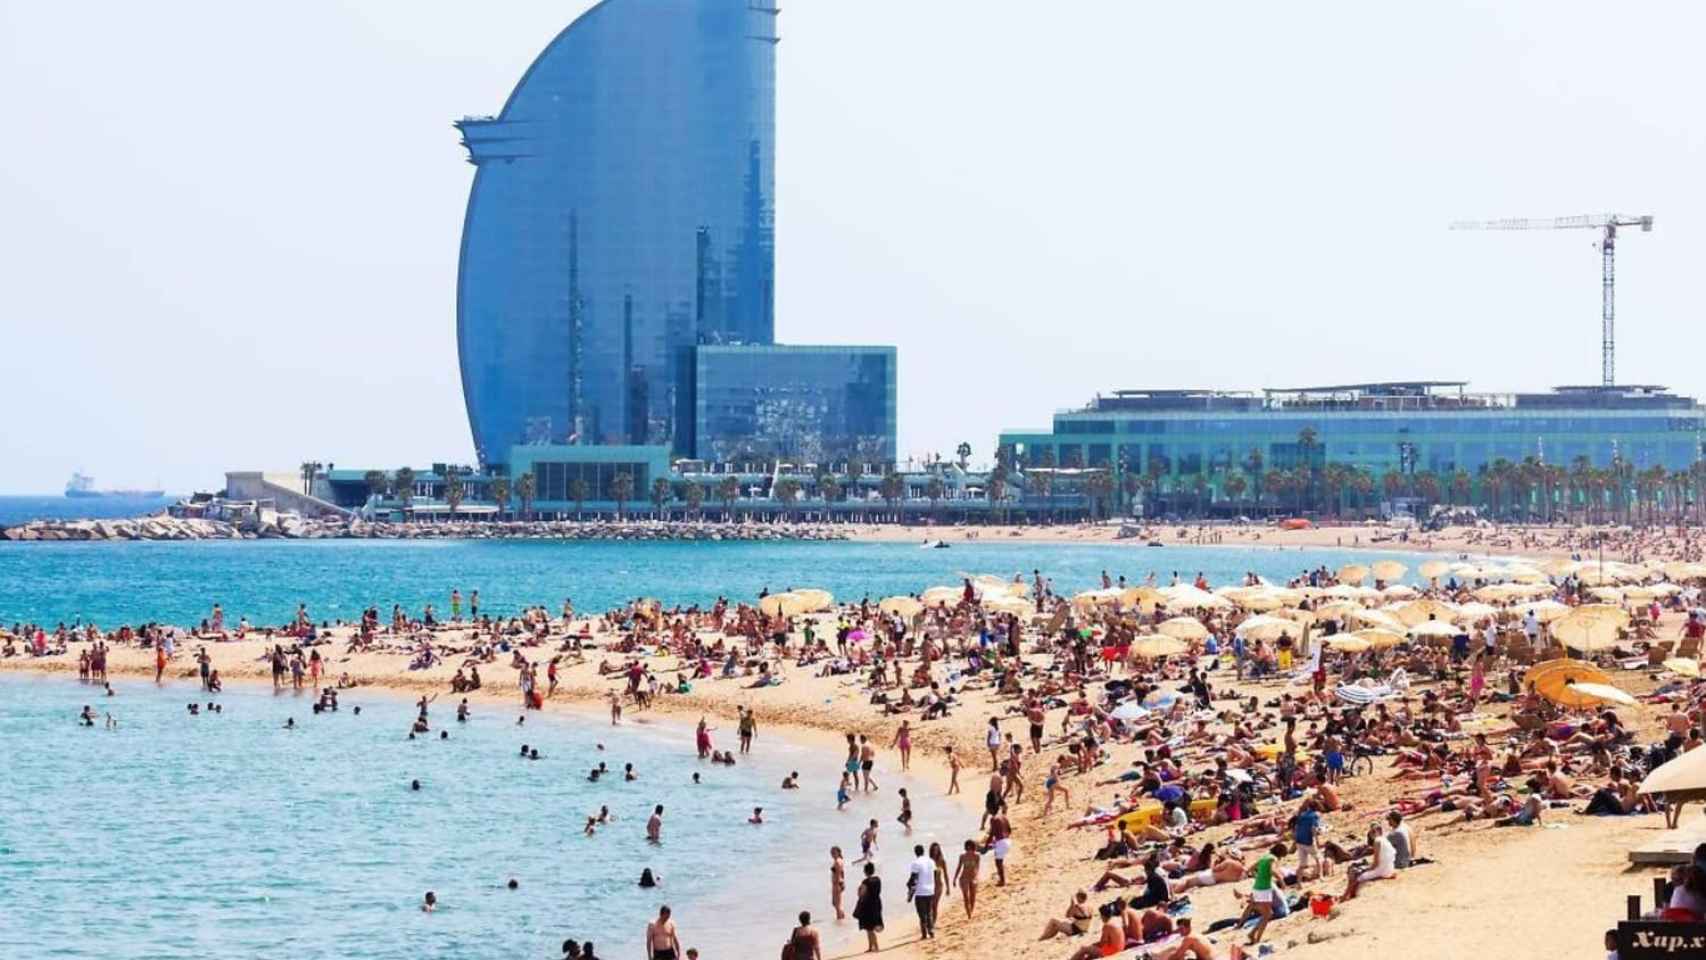 La playa de la Barceloneta con multitud de gente y el hotel W de fondo